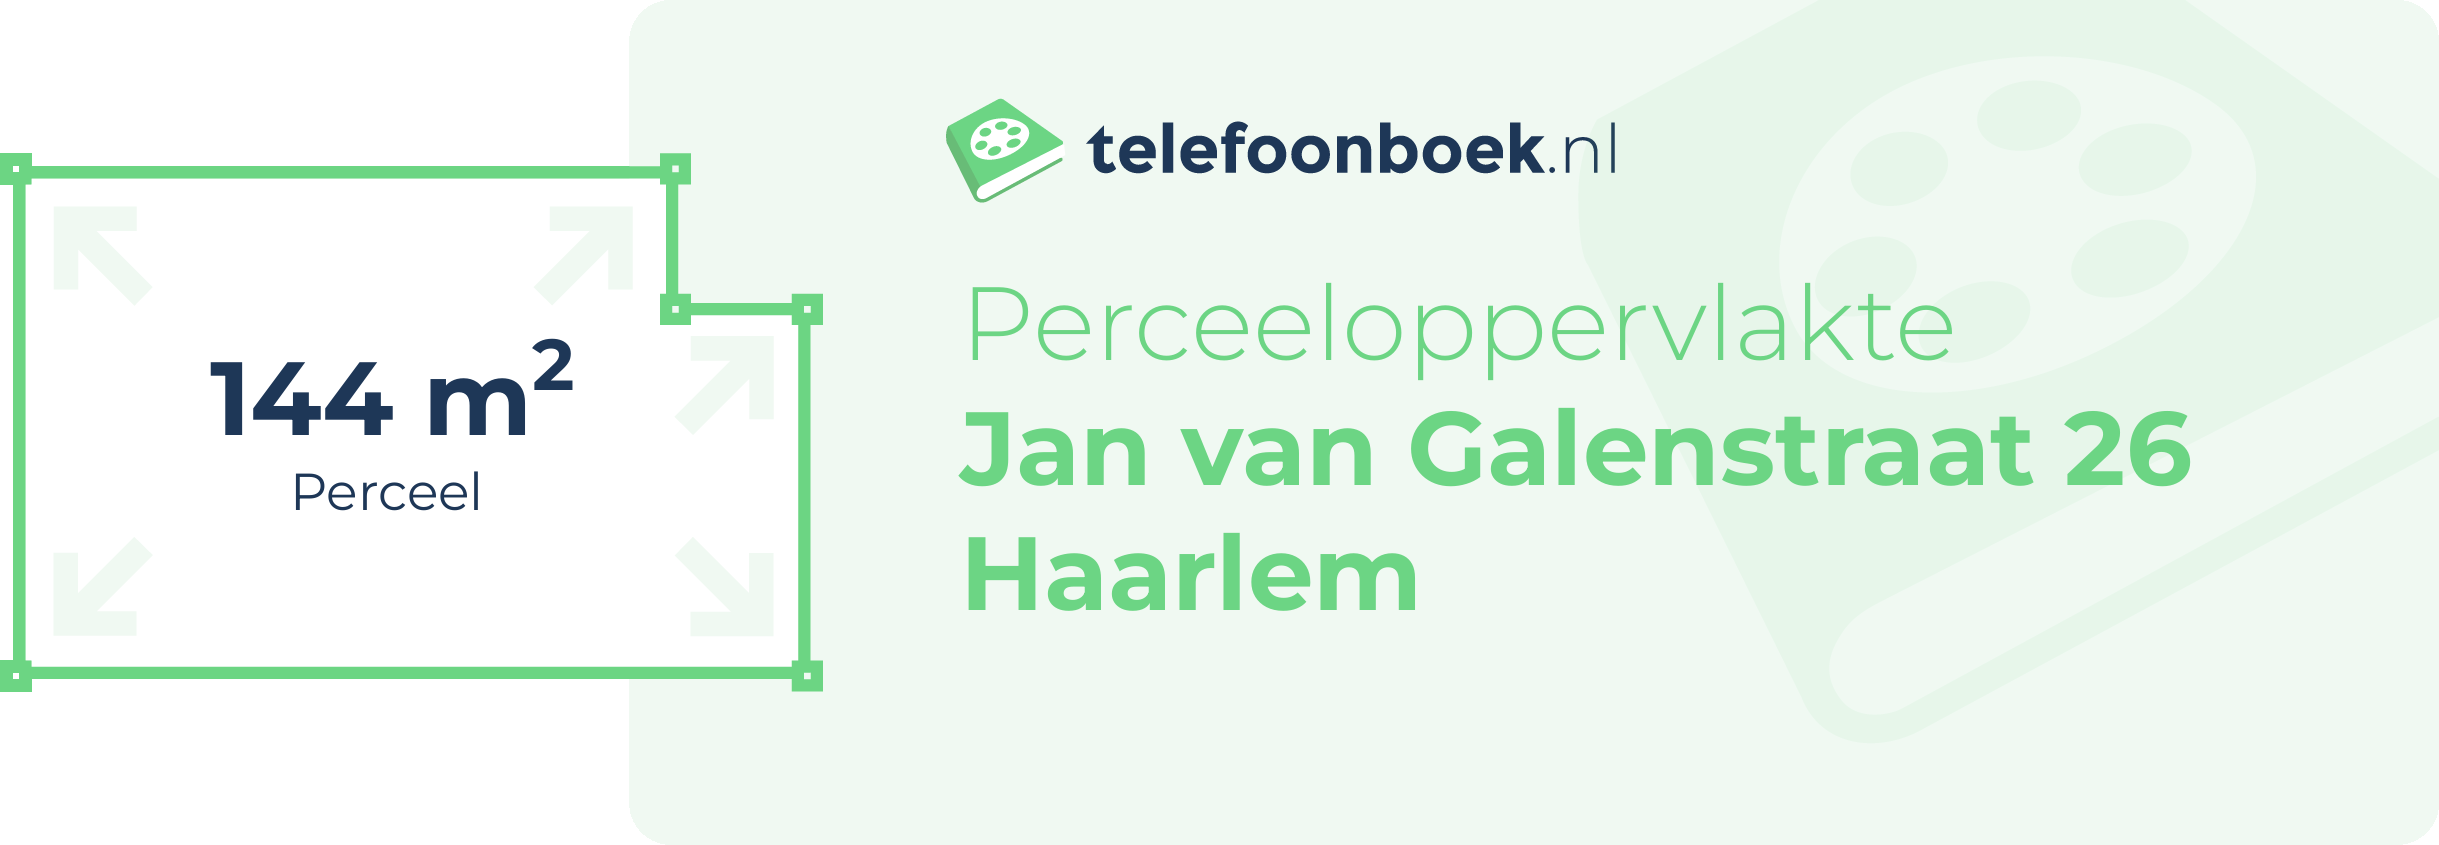 Perceeloppervlakte Jan Van Galenstraat 26 Haarlem